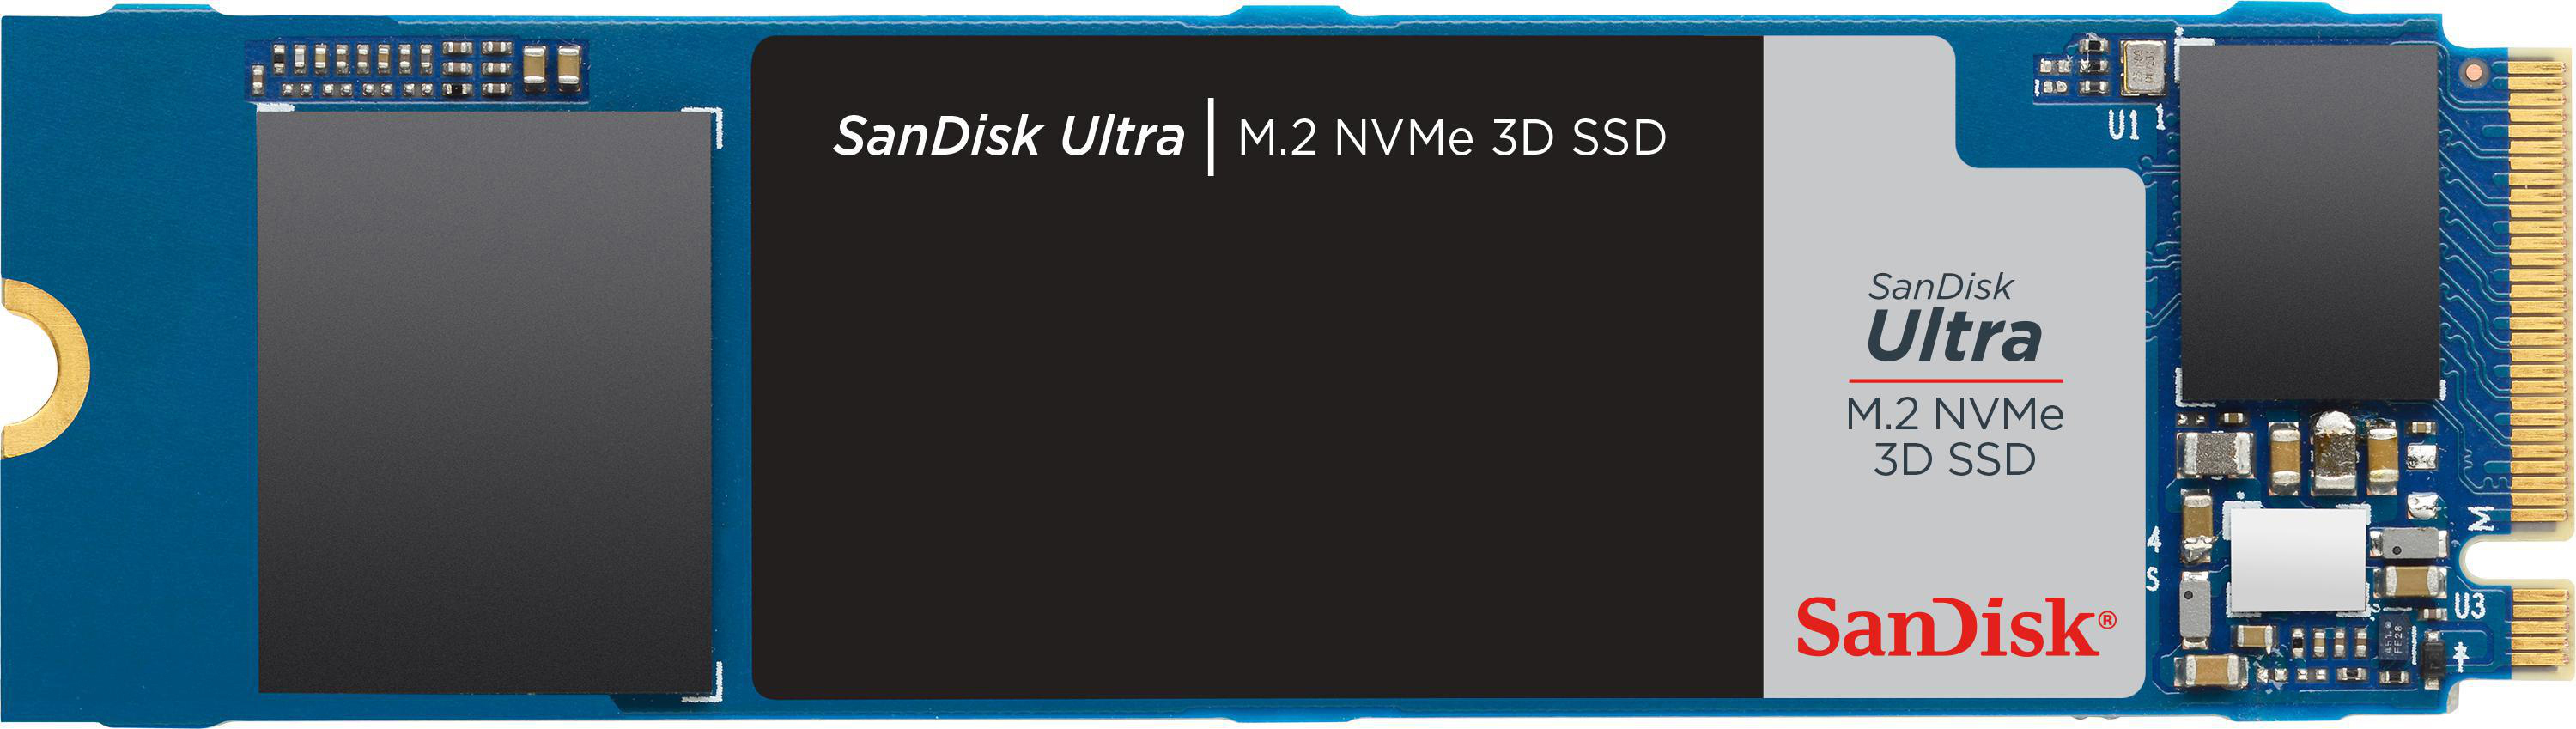 SANDISK 500 M.2 3D Speicher, Interner NVMe, intern Ultra Speicher SSD via GB